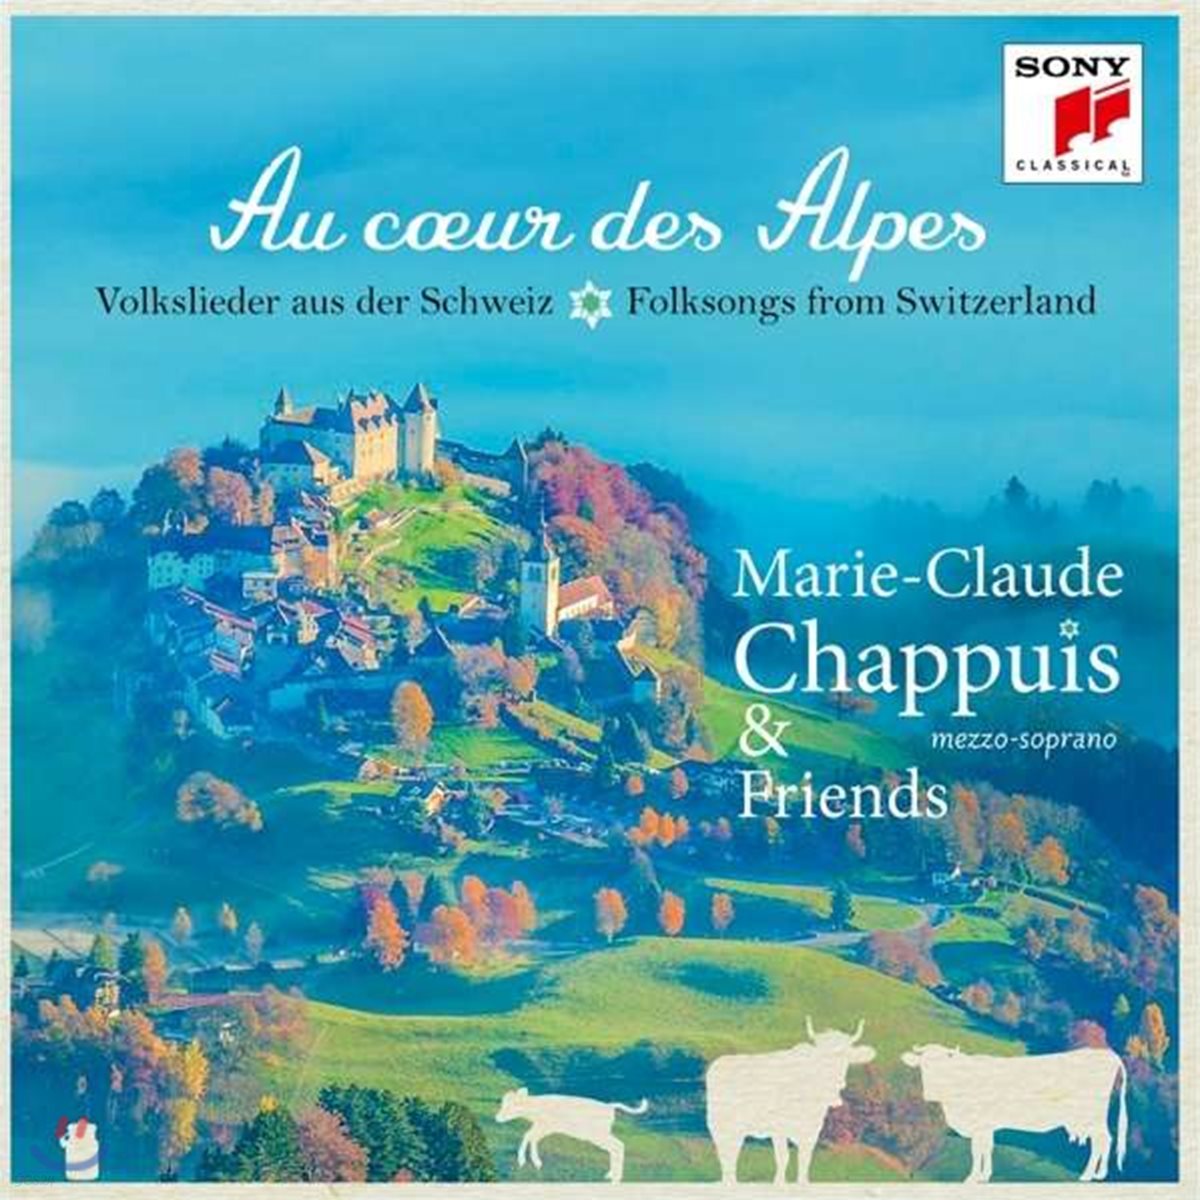 Marie-Claude Chappuis &#39;알프스의 중심에서&#39; - 스위스 민요와 가곡집 (Au coeur des Alpes)